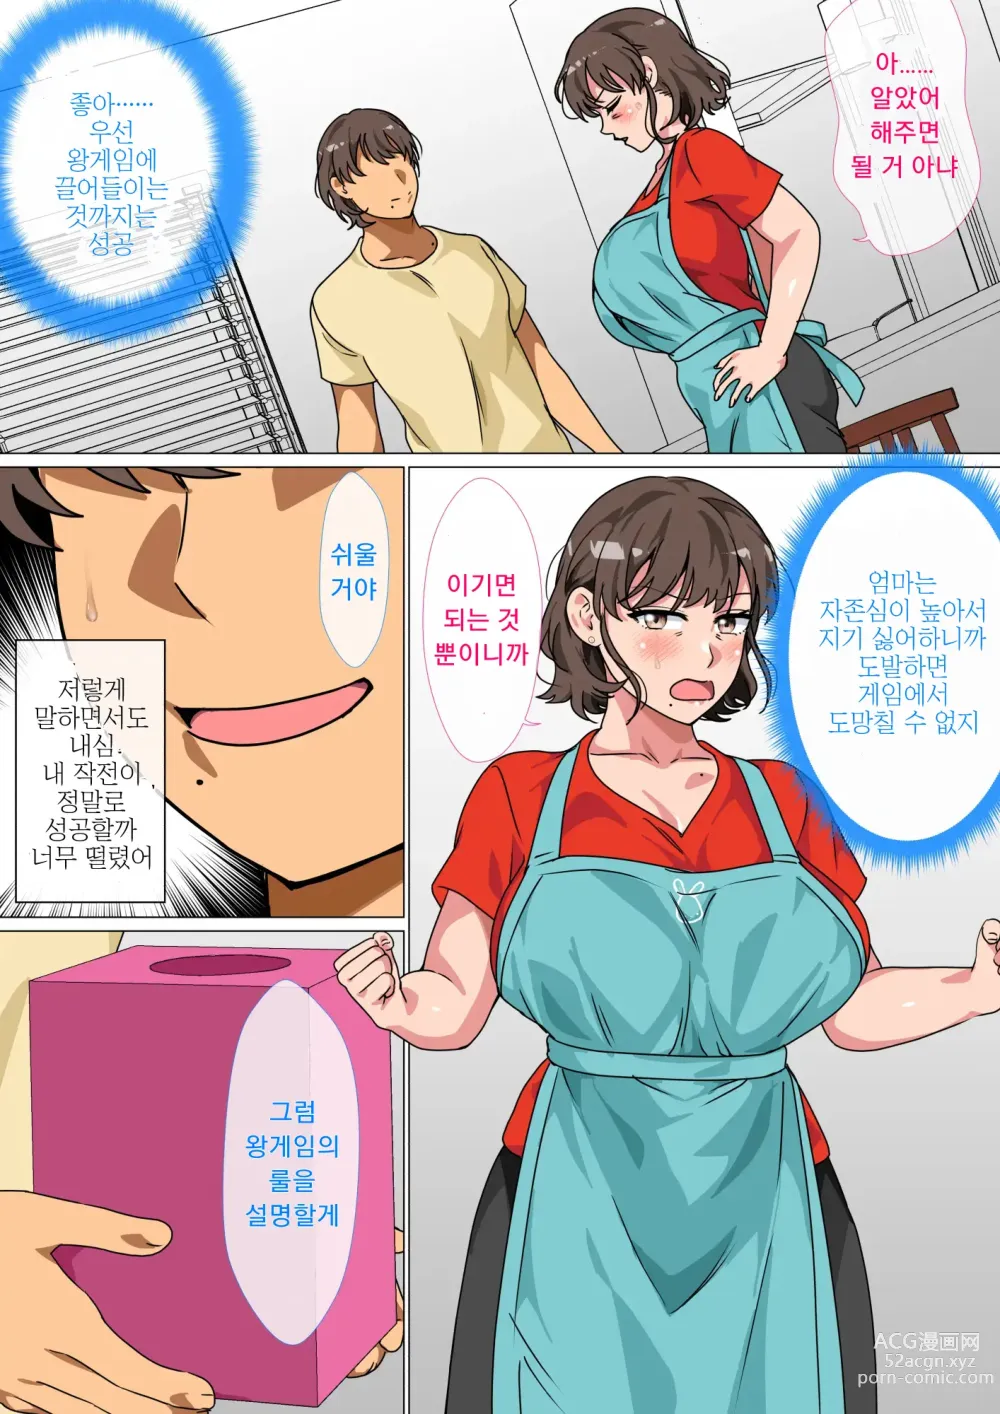 Page 8 of doujinshi 왕게임으로 명령해서 엄마랑 섹스한 이야기